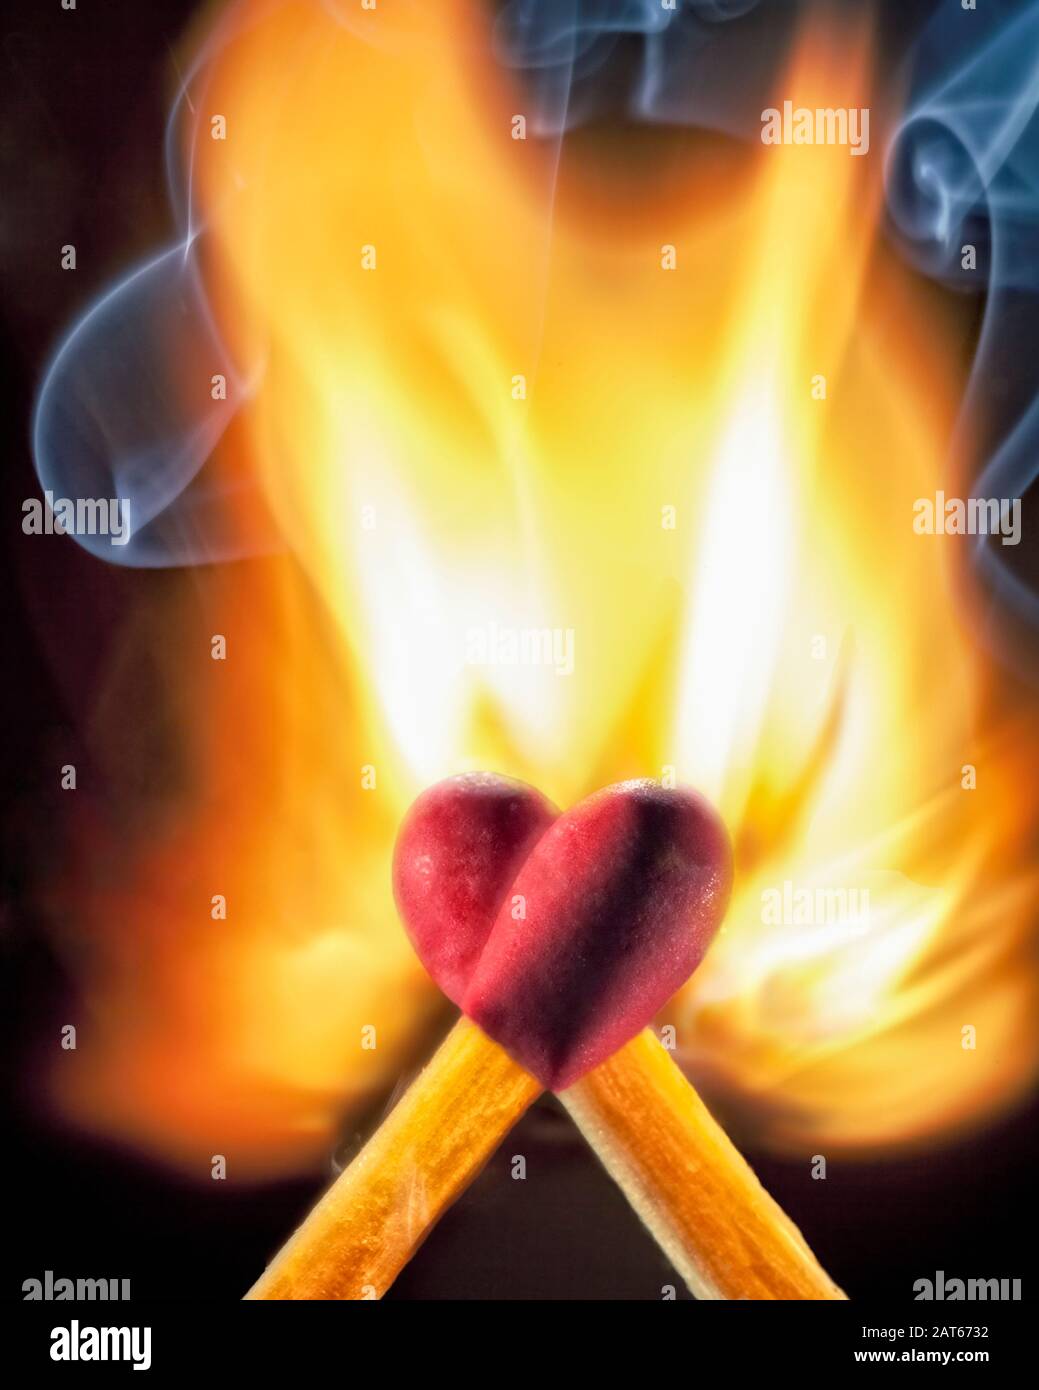 Zwei Holzmatchstöcke mit roten Spitzen überlagern sich, um eine Herzform zu bilden, während sie sich in Flammen entzünden Stockfoto